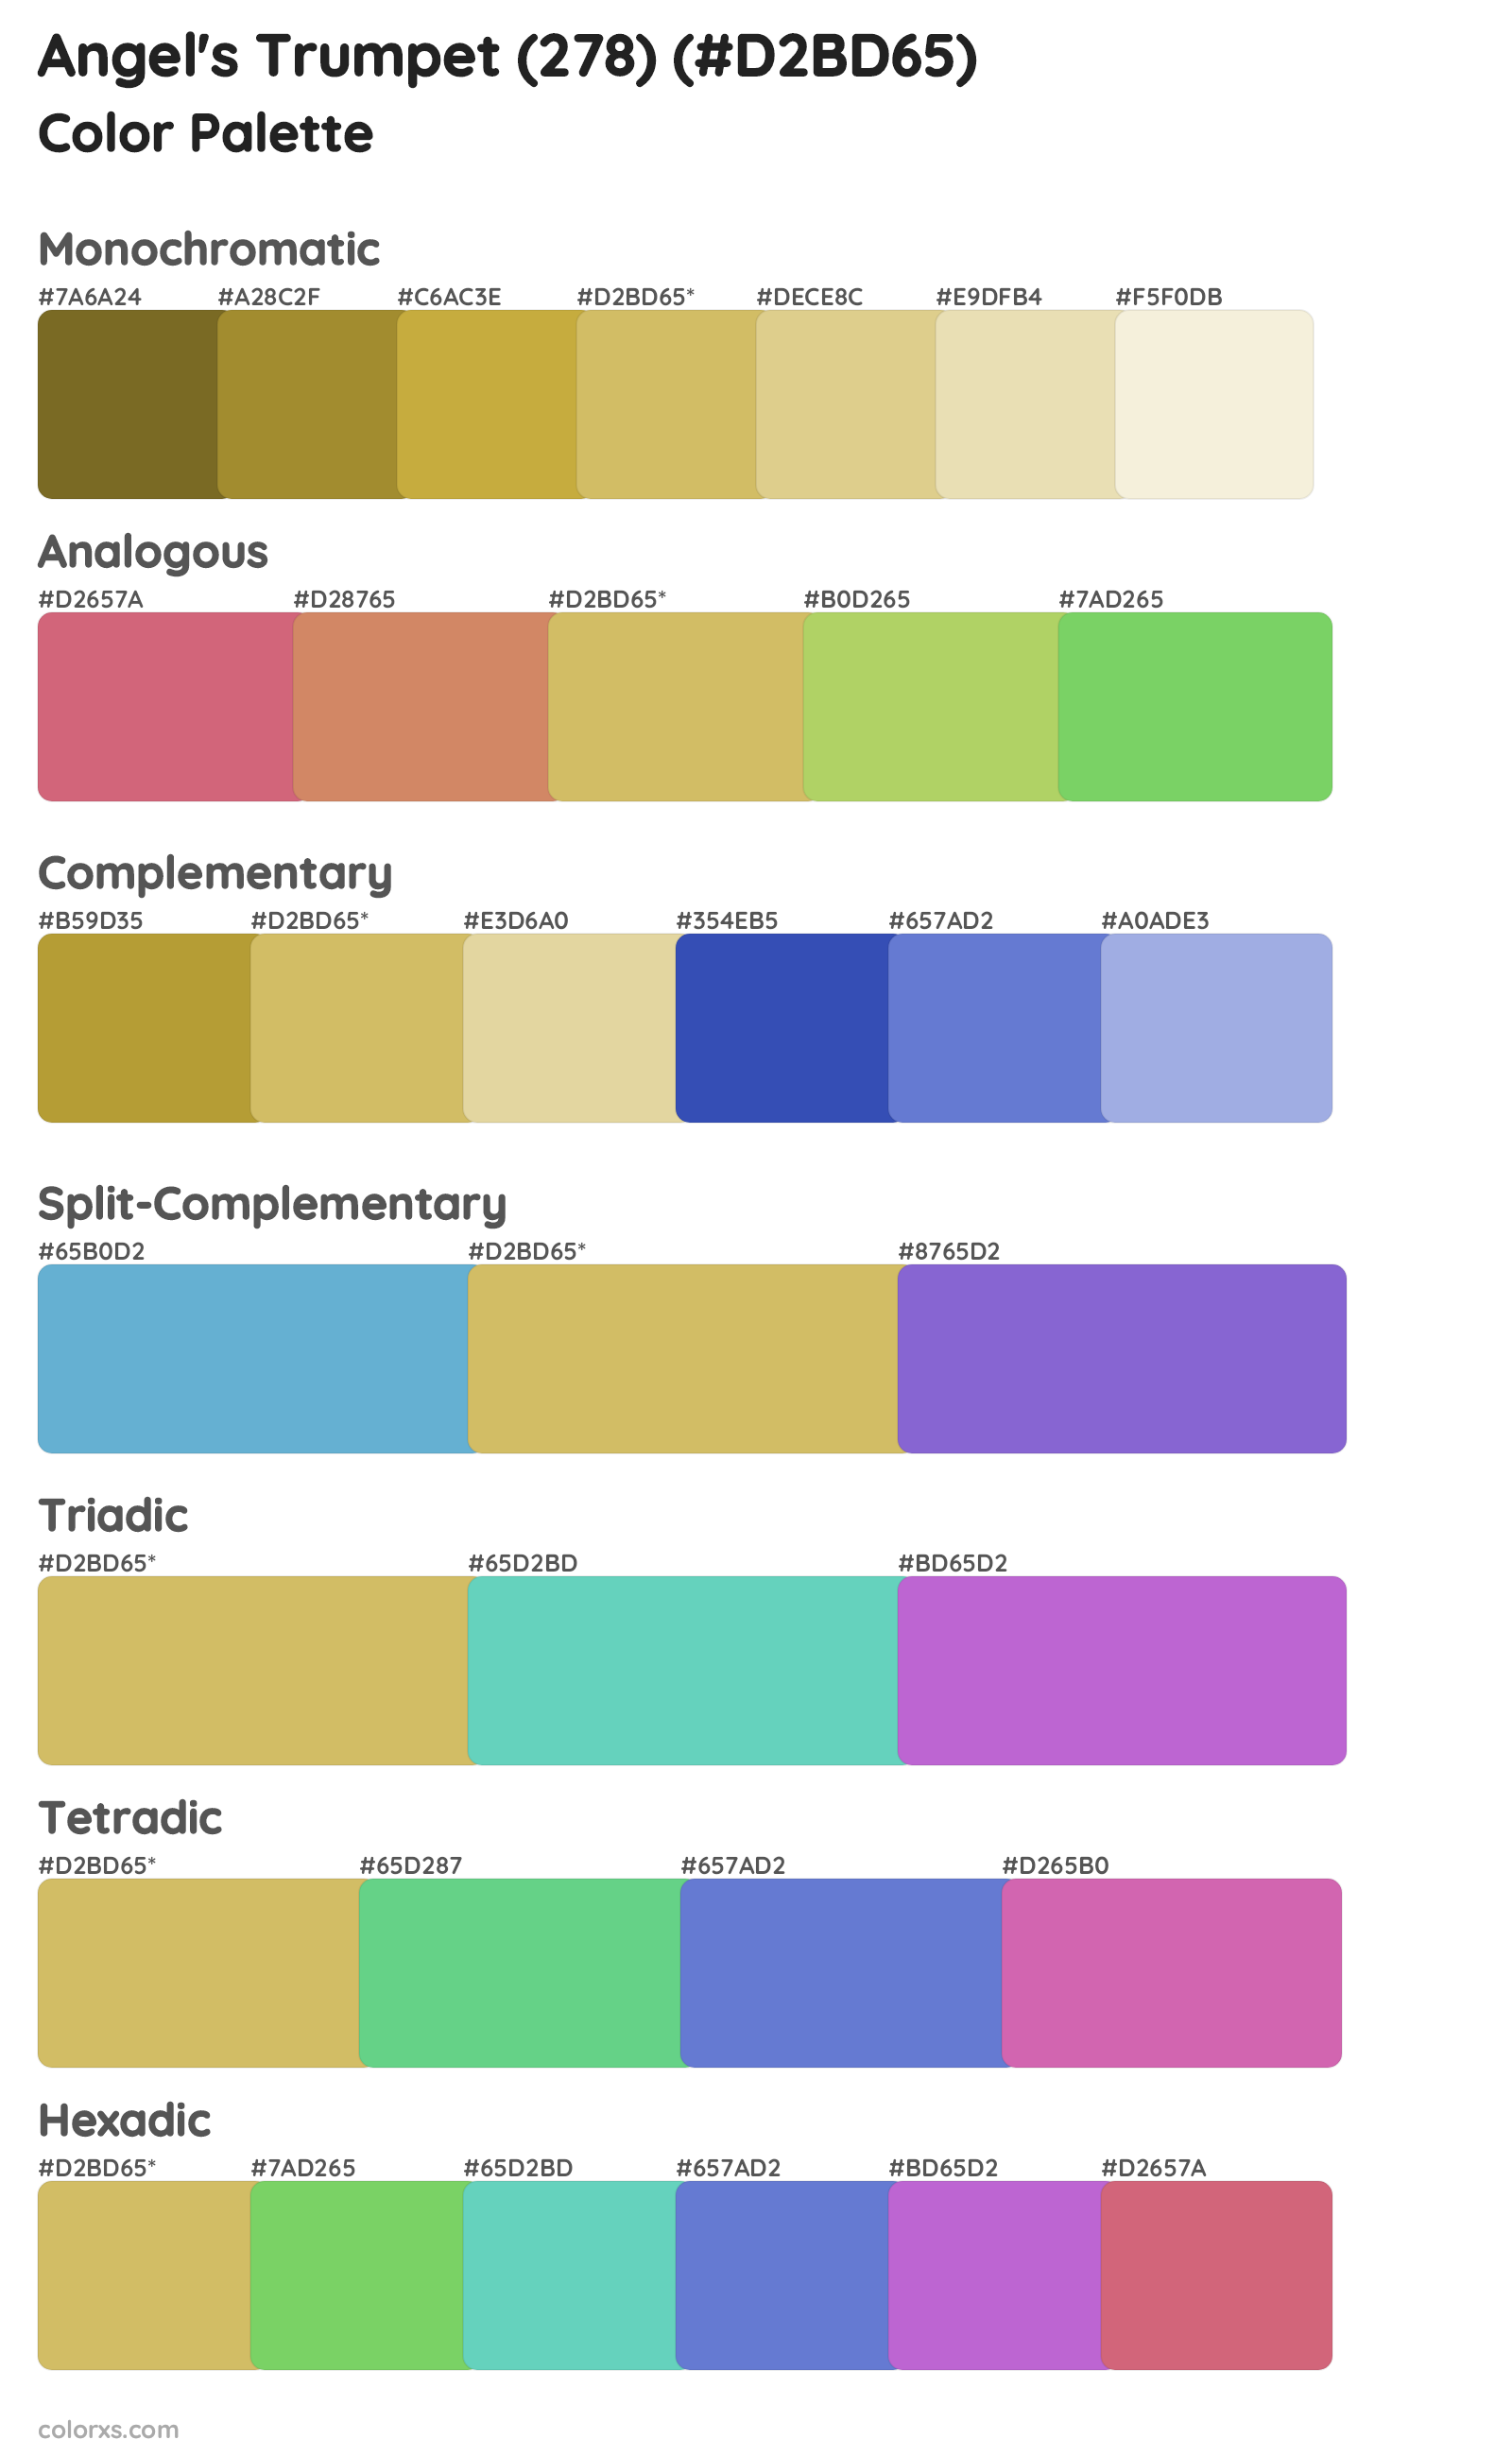 Angel's Trumpet (278) Color Scheme Palettes